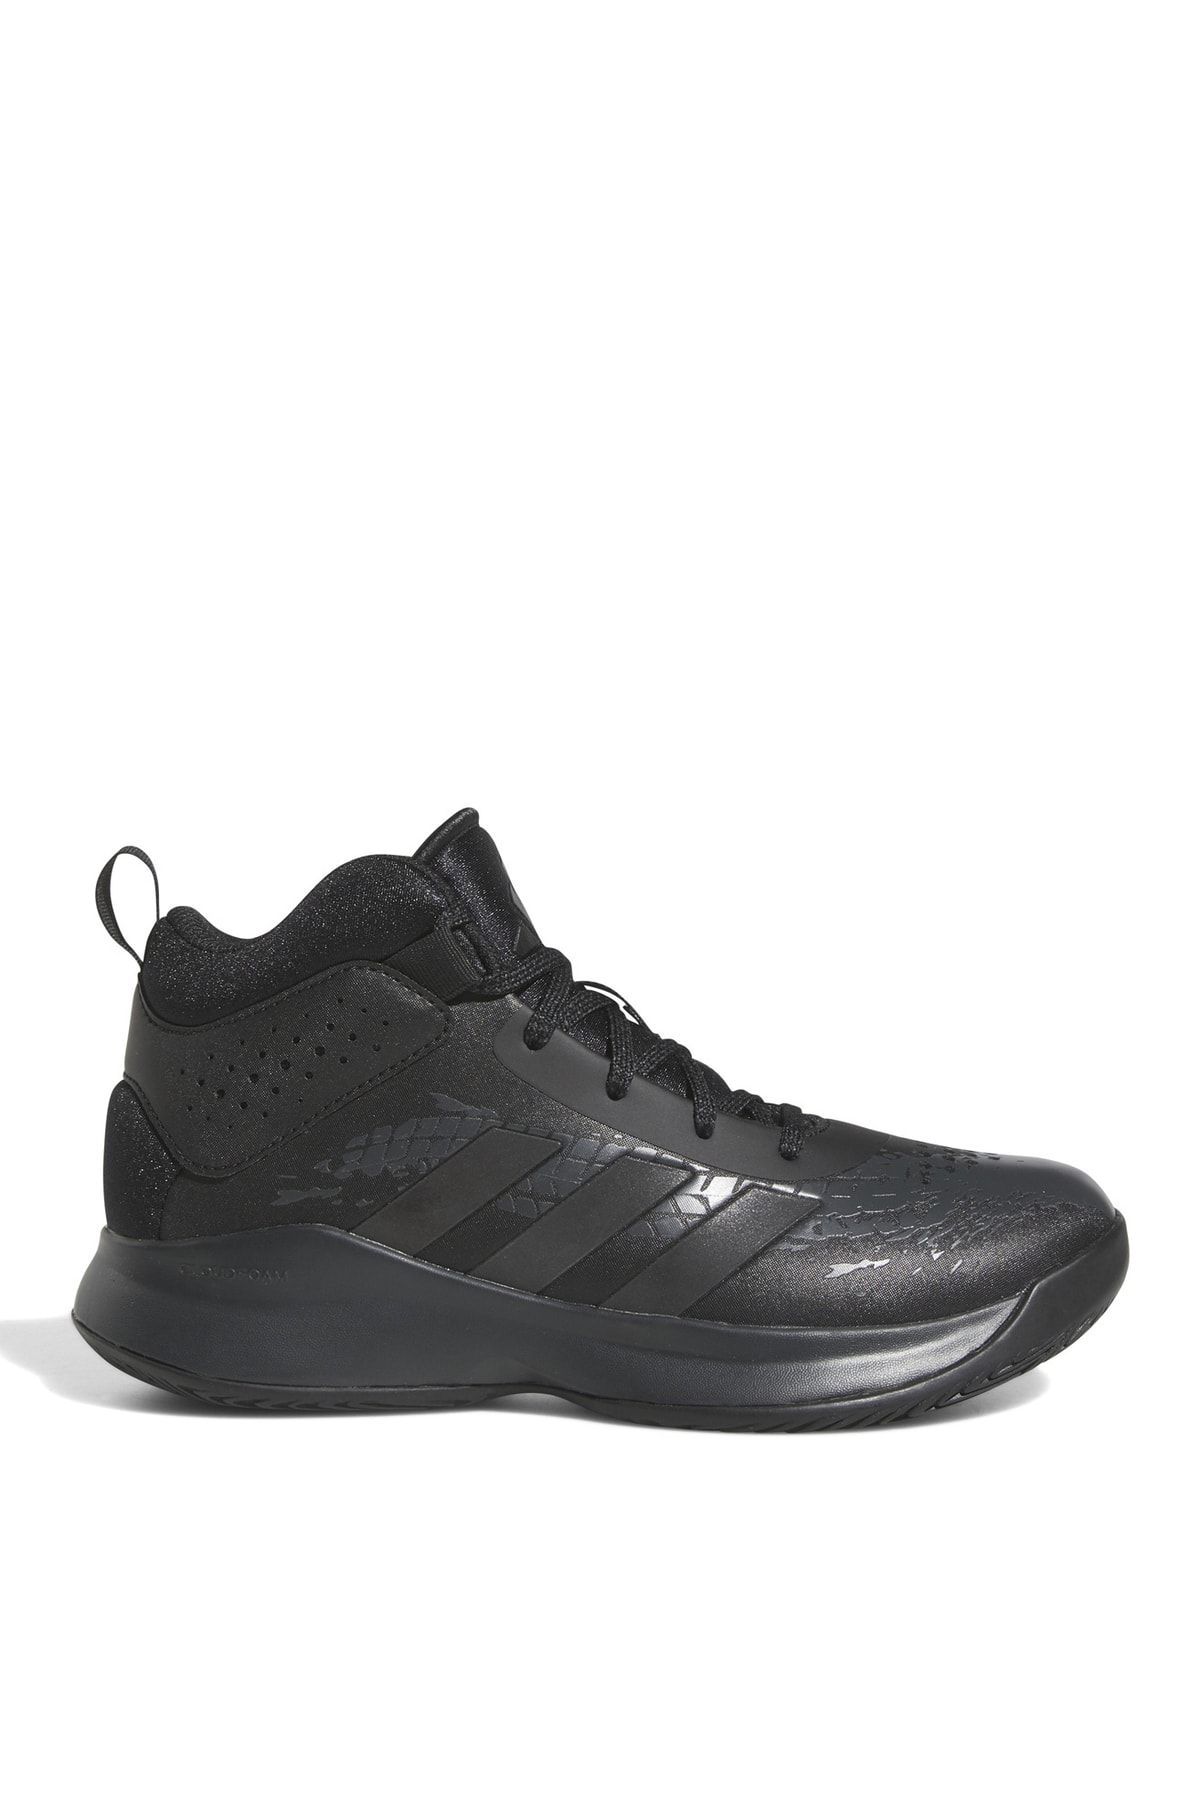 adidas Siyah Erkek Çocuk Basketbol Ayakkabısı Gw4694 Cross Em Up 5 K Wid Cblack/c